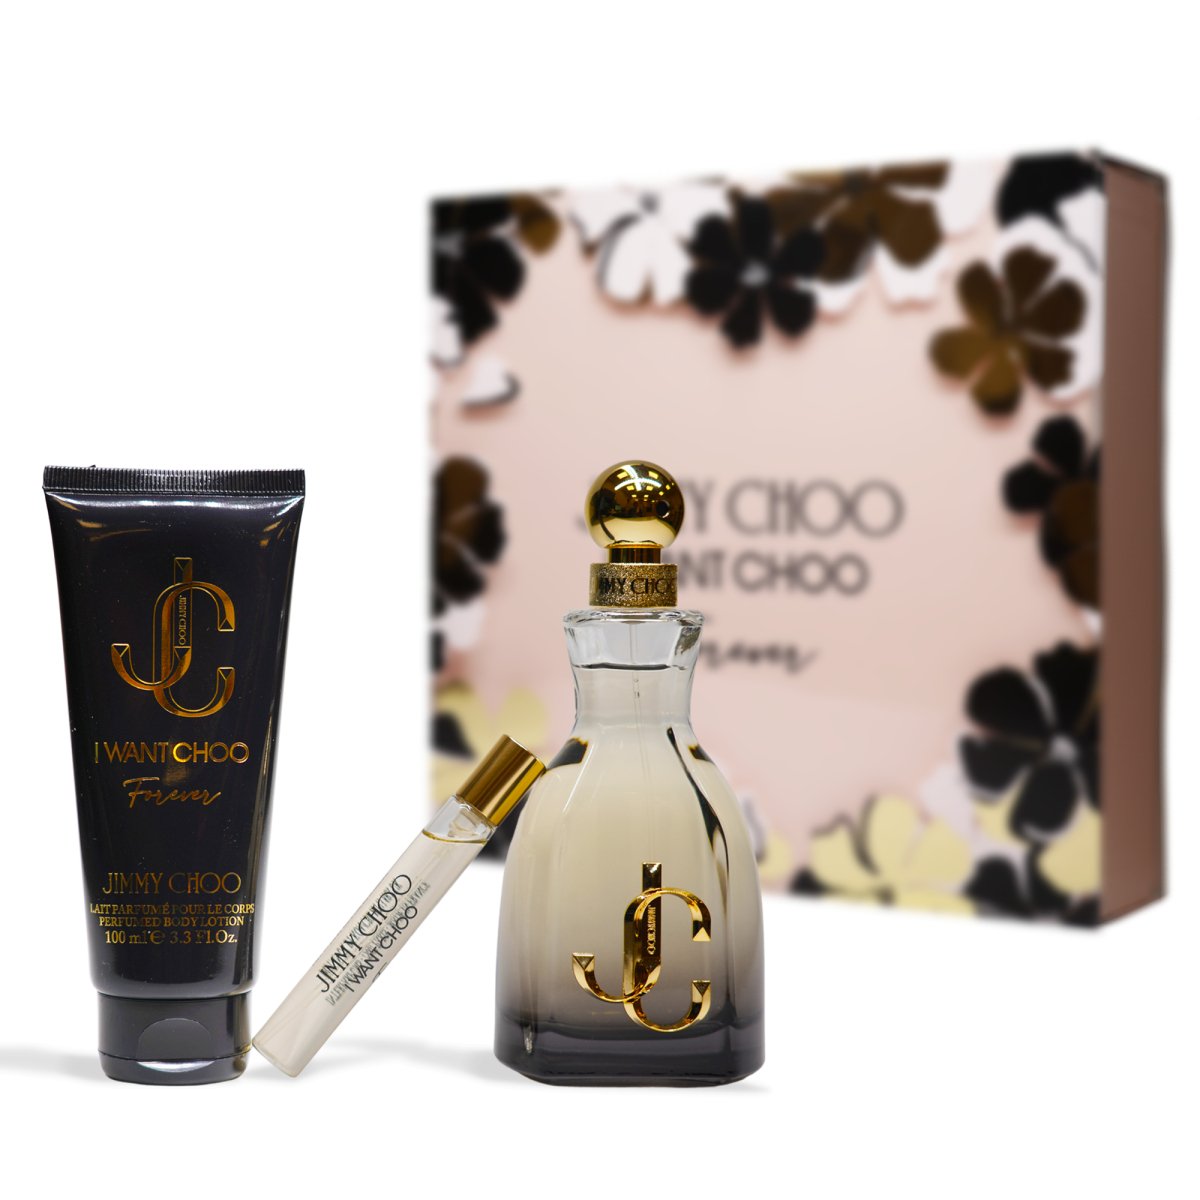 Jimmy Choo I Want Choo Forever, Gift Set & Box - Perfume Headquarters - Jimmy Choo - Gift Set